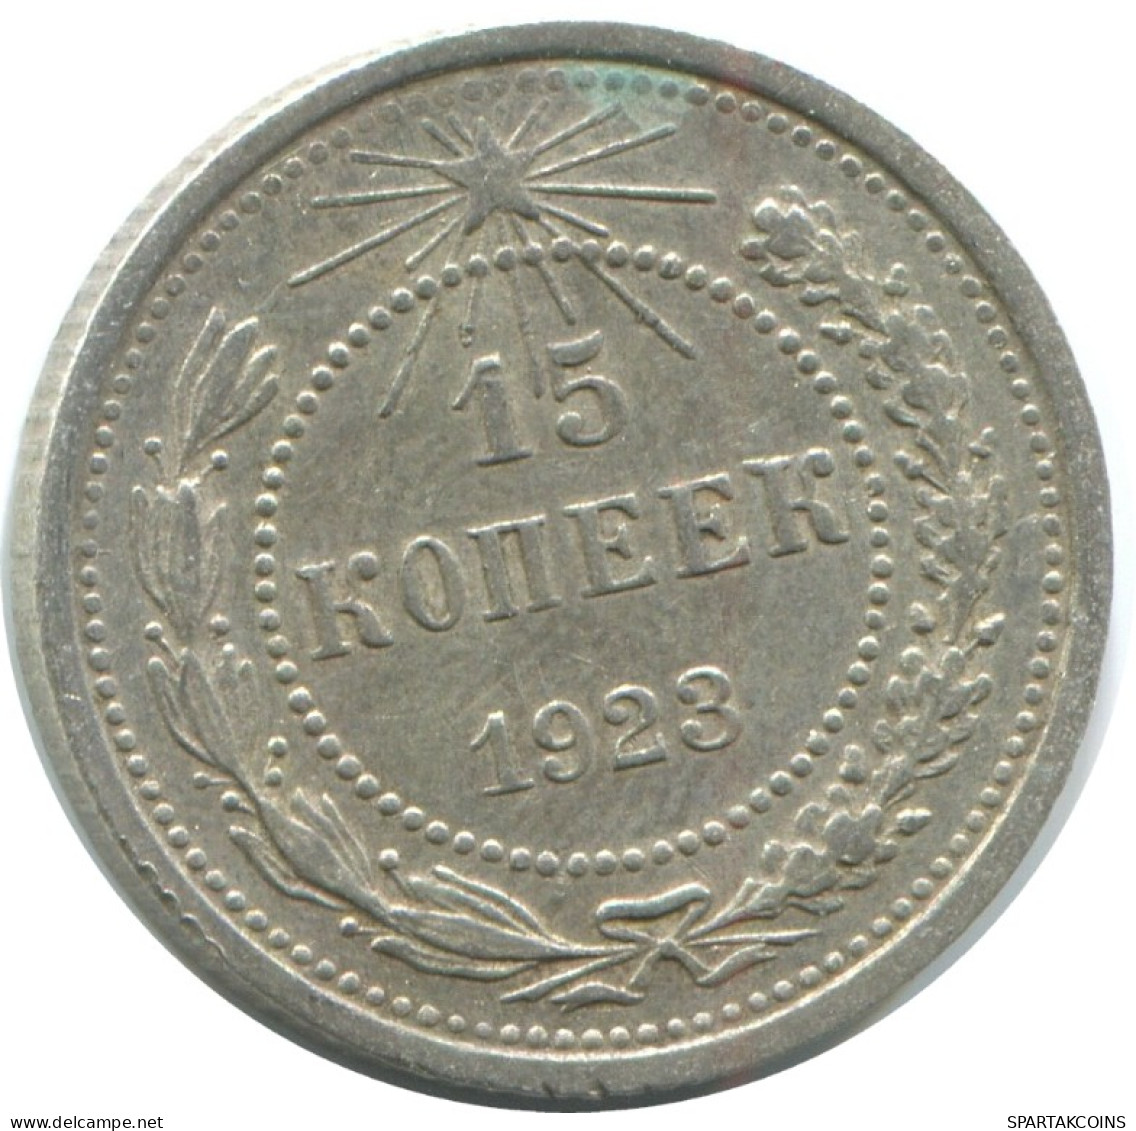 15 KOPEKS 1923 RUSSIA RSFSR SILVER Coin HIGH GRADE #AF158.4.U.A - Russland